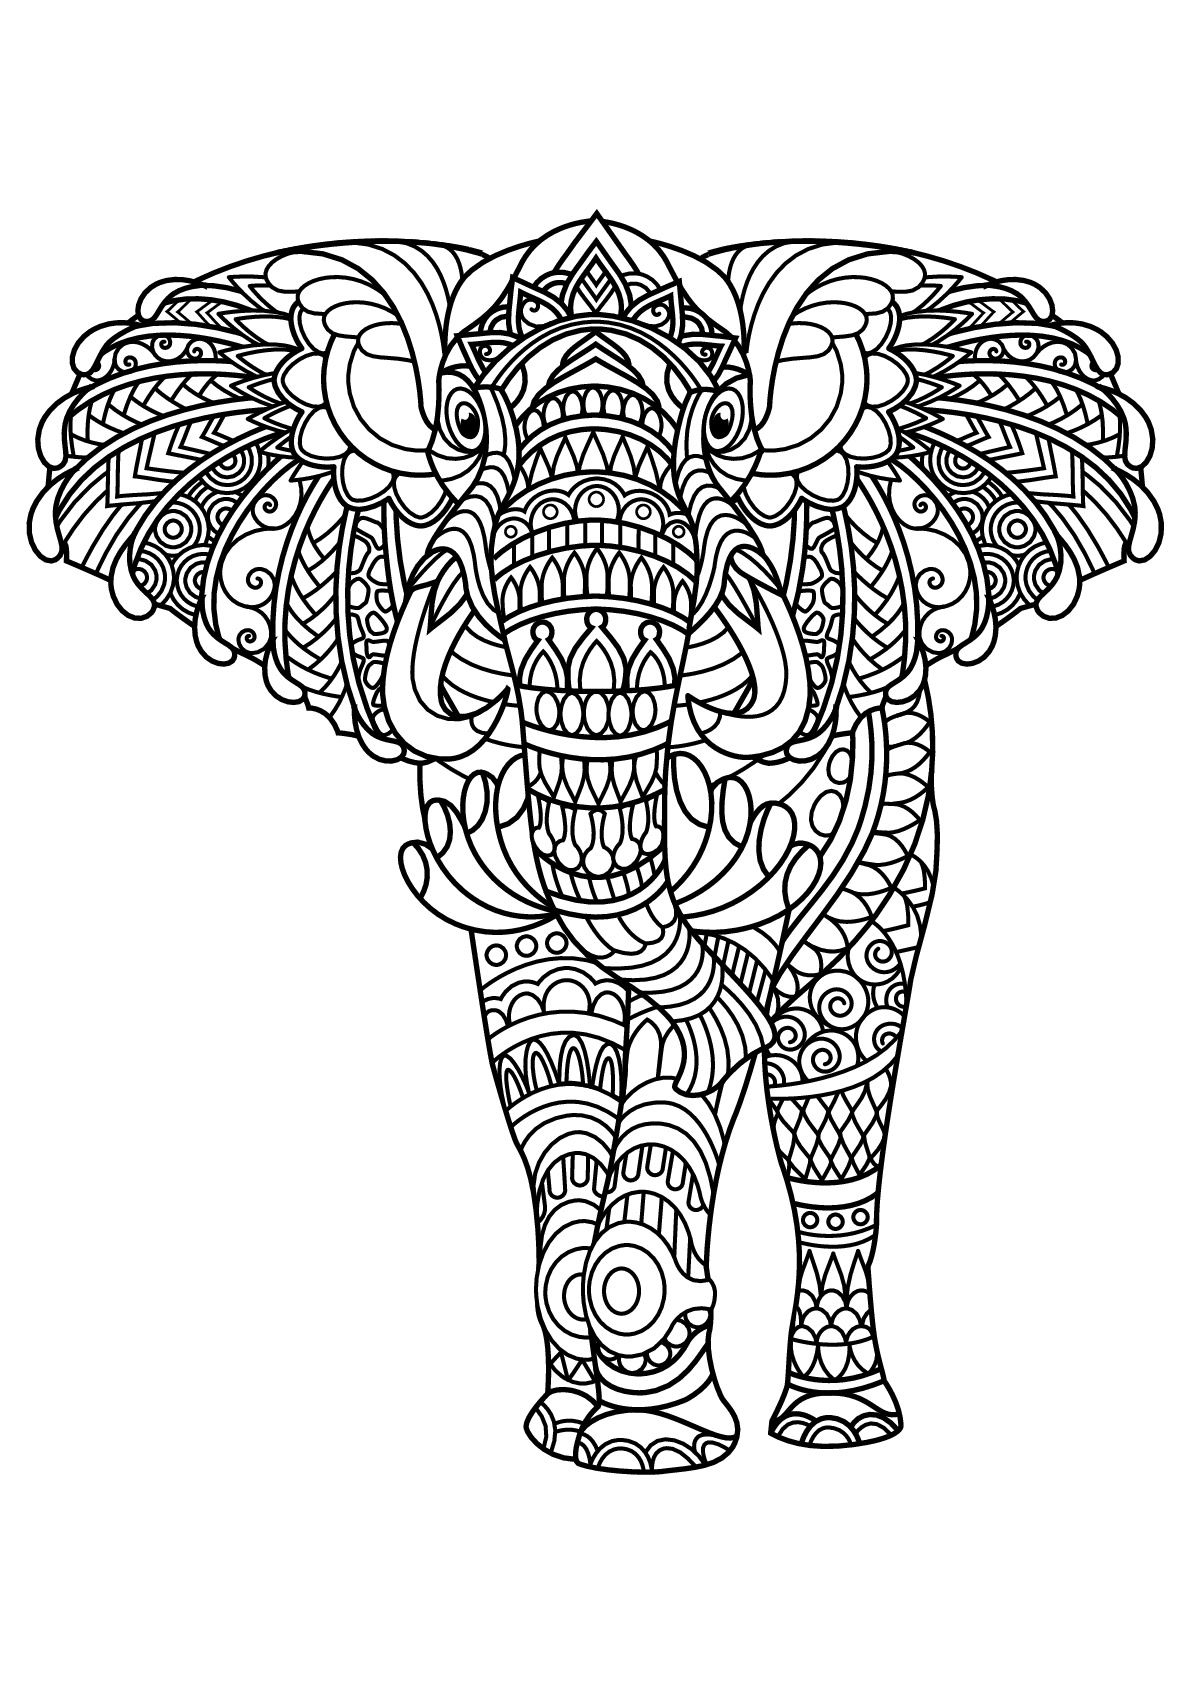 Majestuoso elefante, con motivos armoniosos y complejos